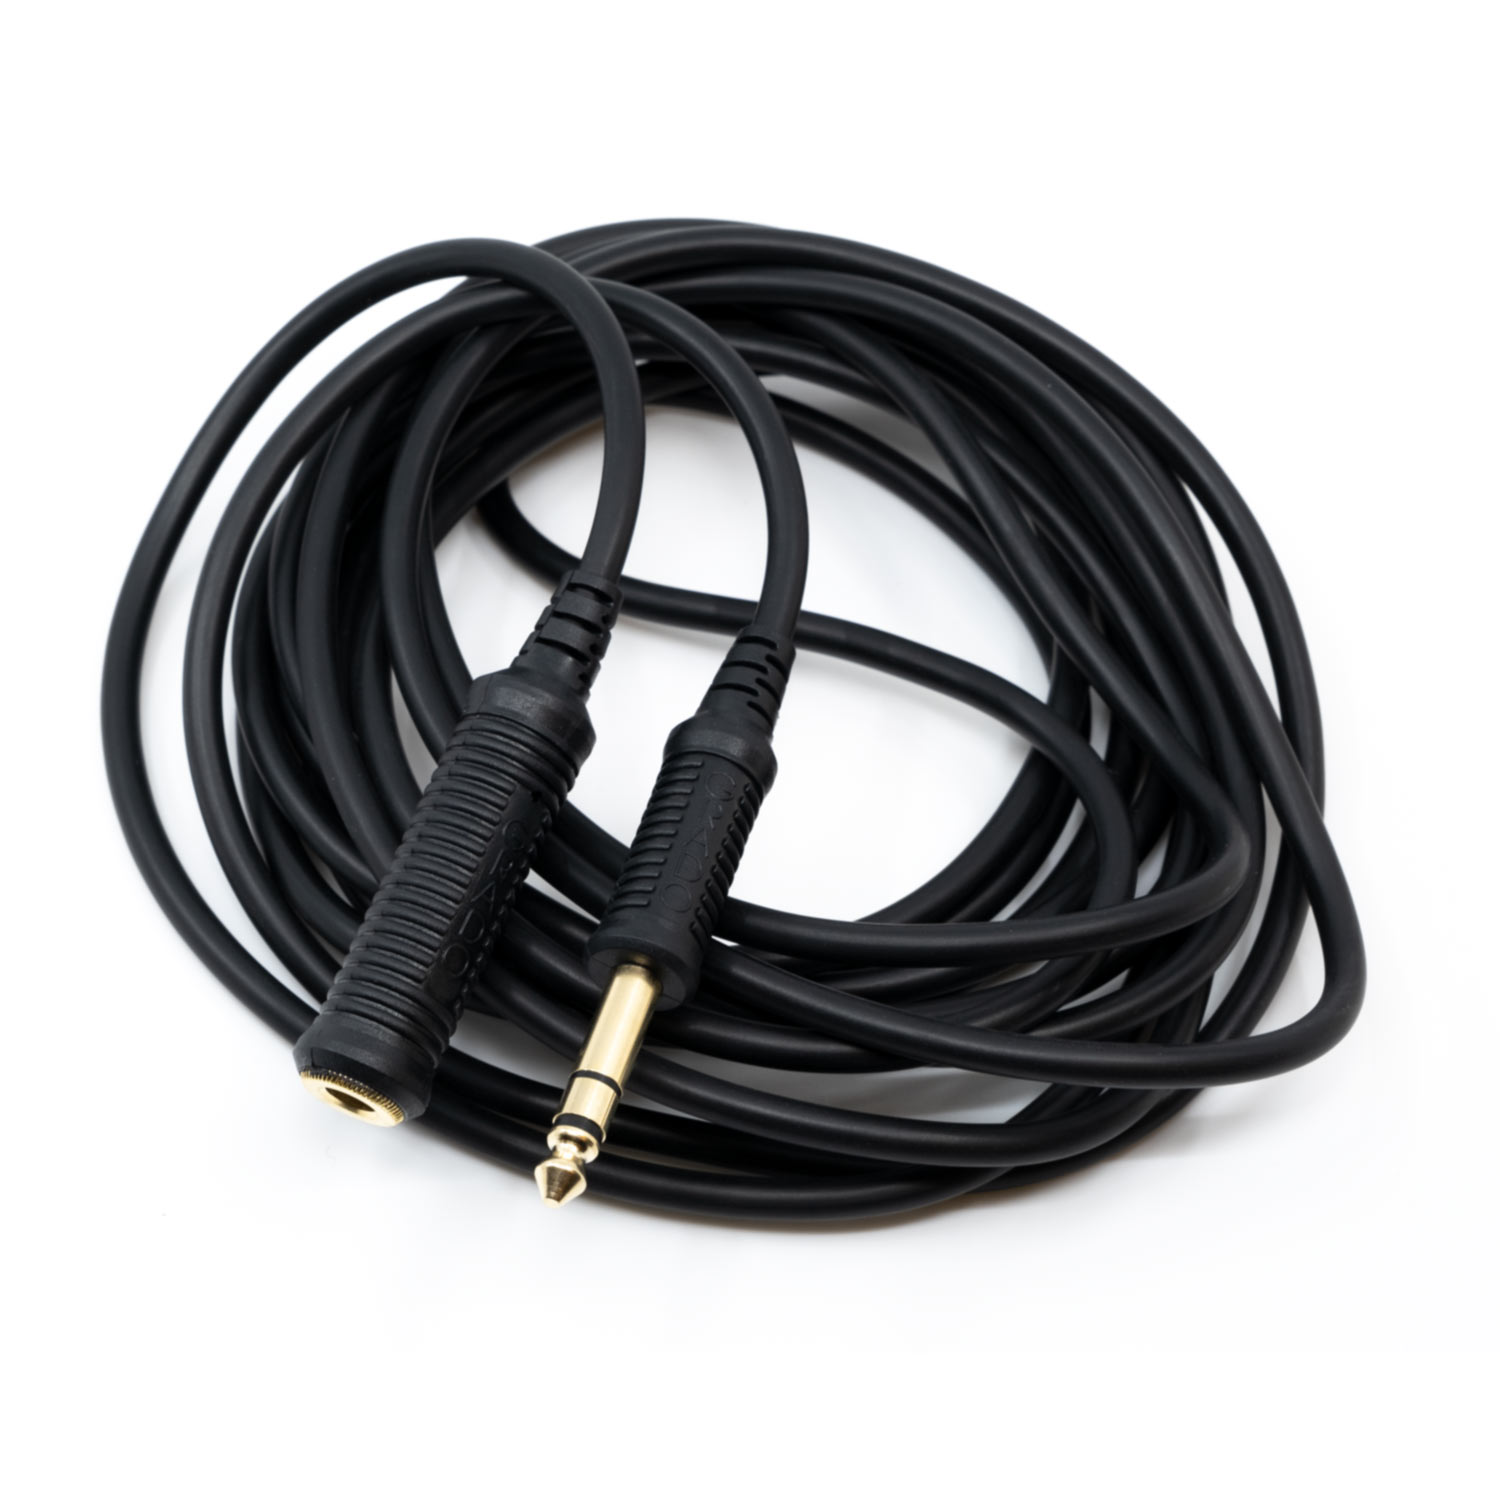 Grado Prestige Headphone Extension Cable